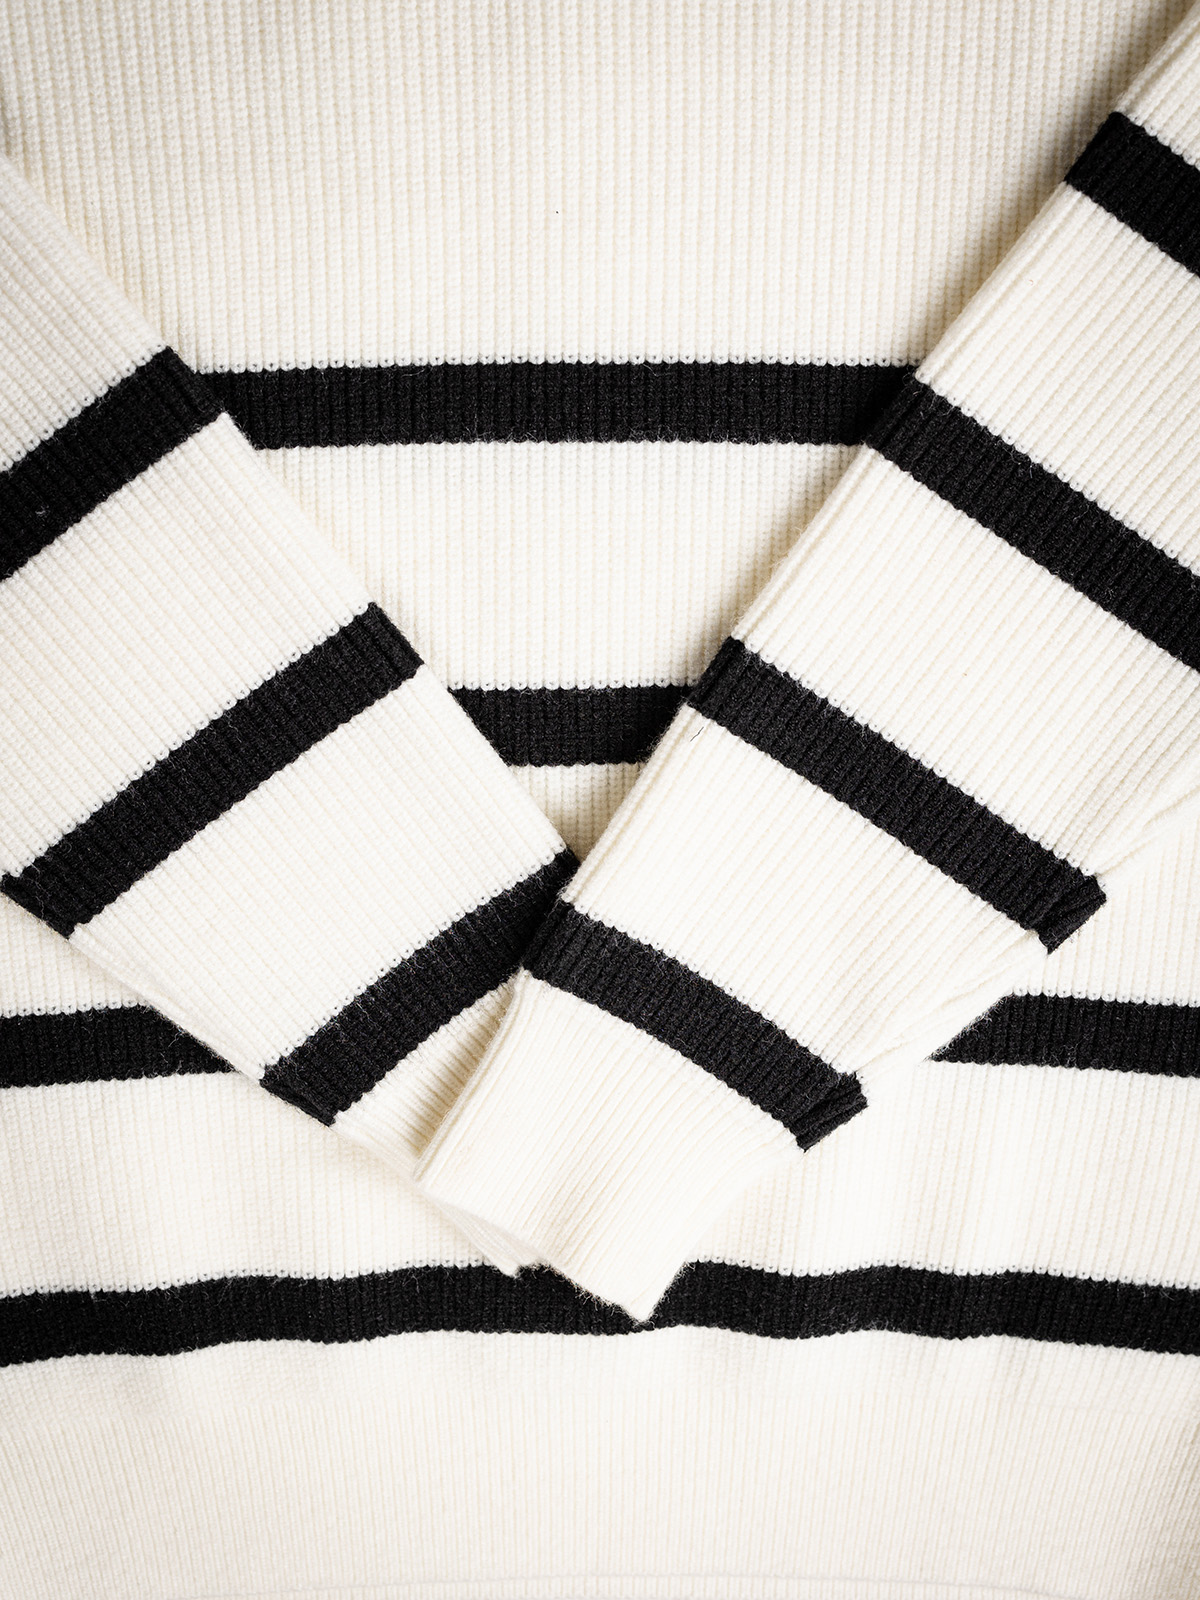 Stripe Oversized Sweater 1608 WEAR